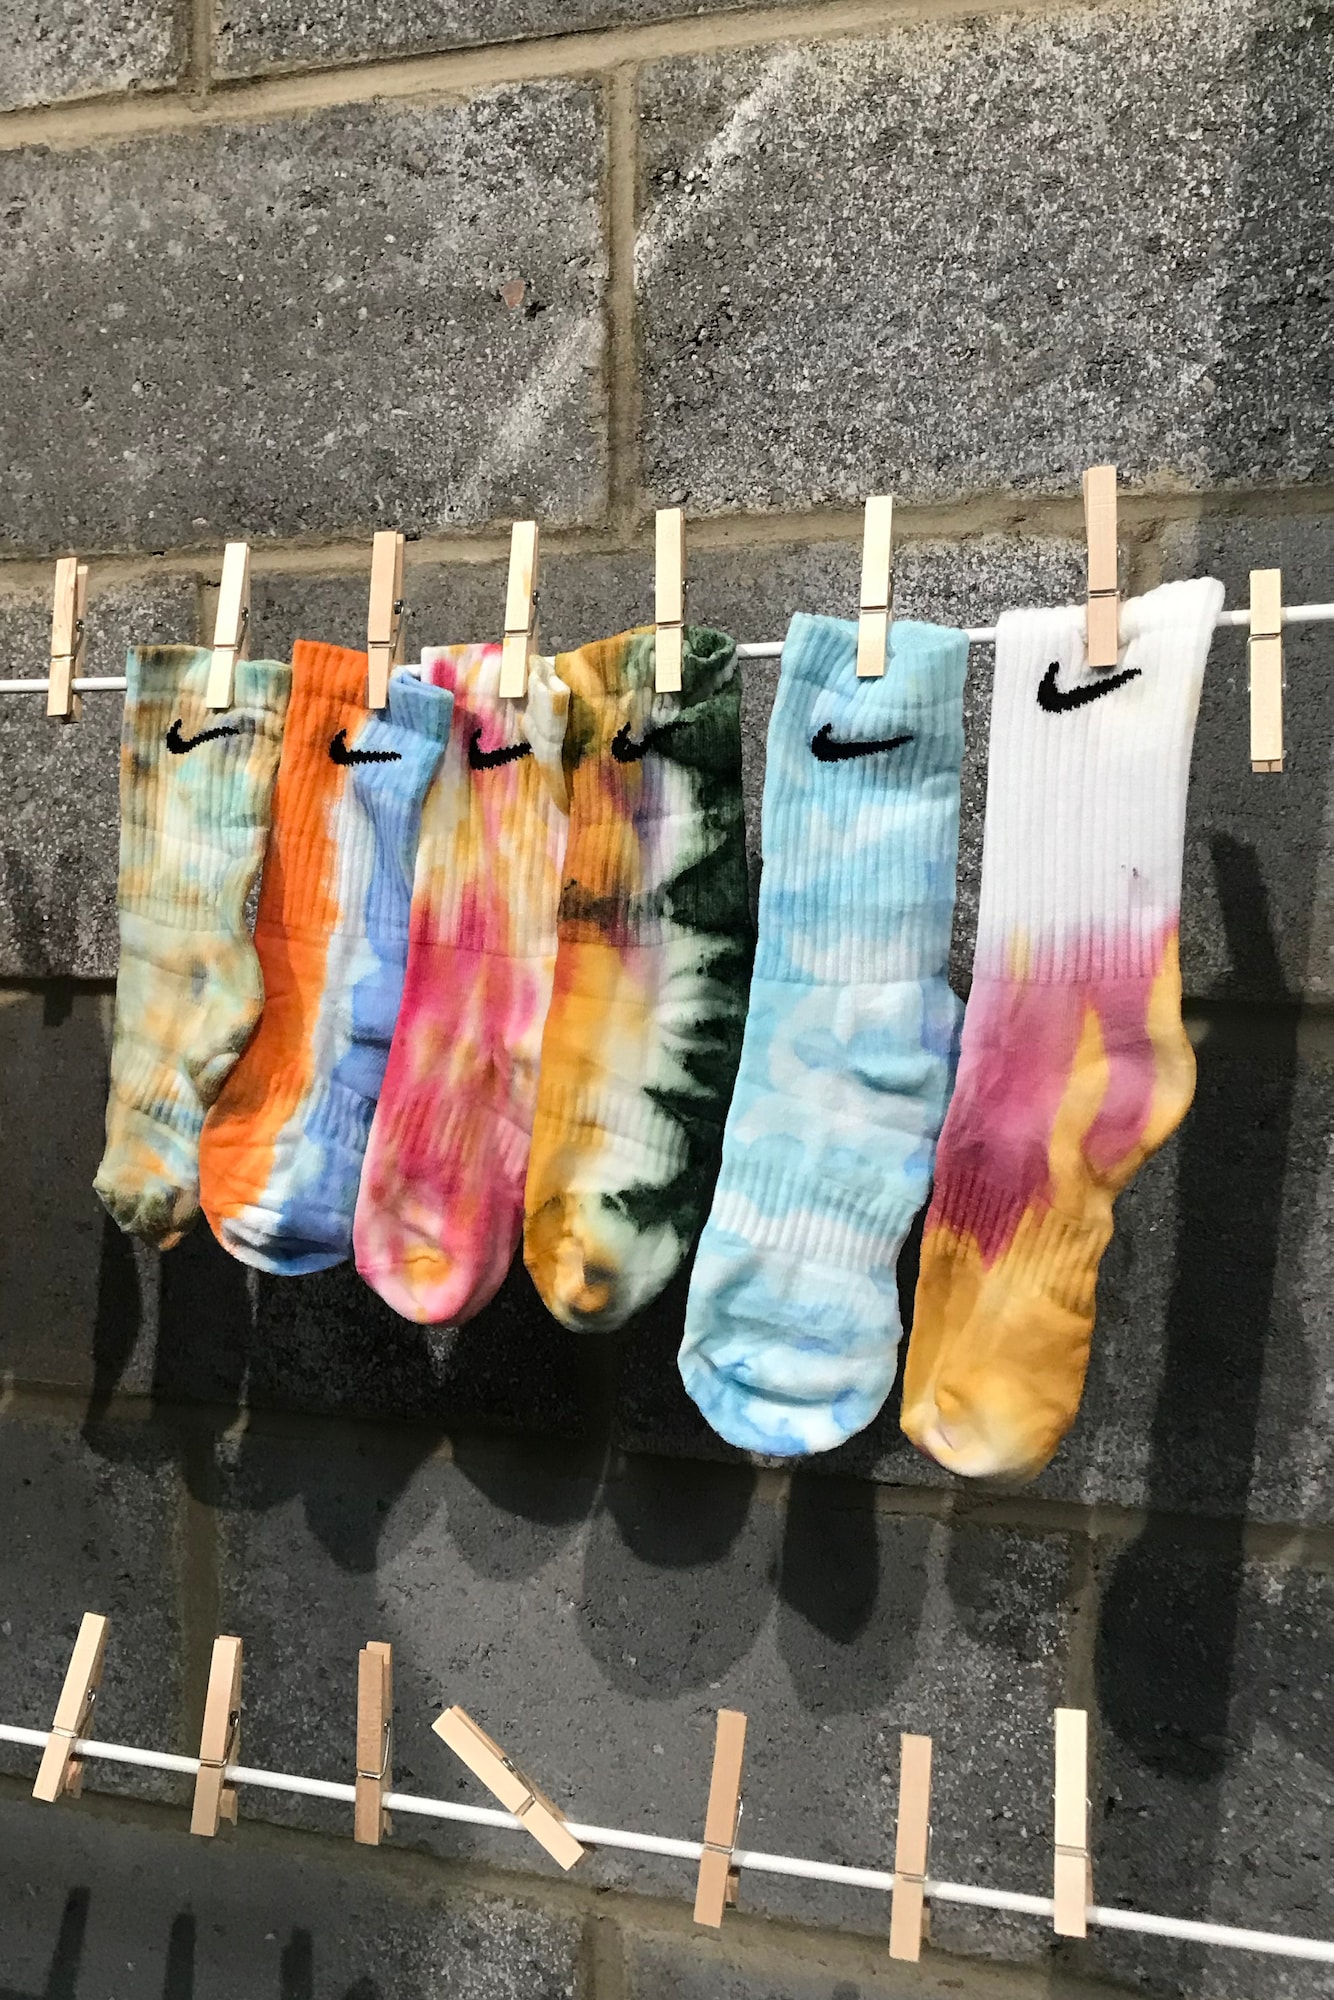 Tie Dye Socks: 3 Easy Fun Patterns - Tie Dye And Teal